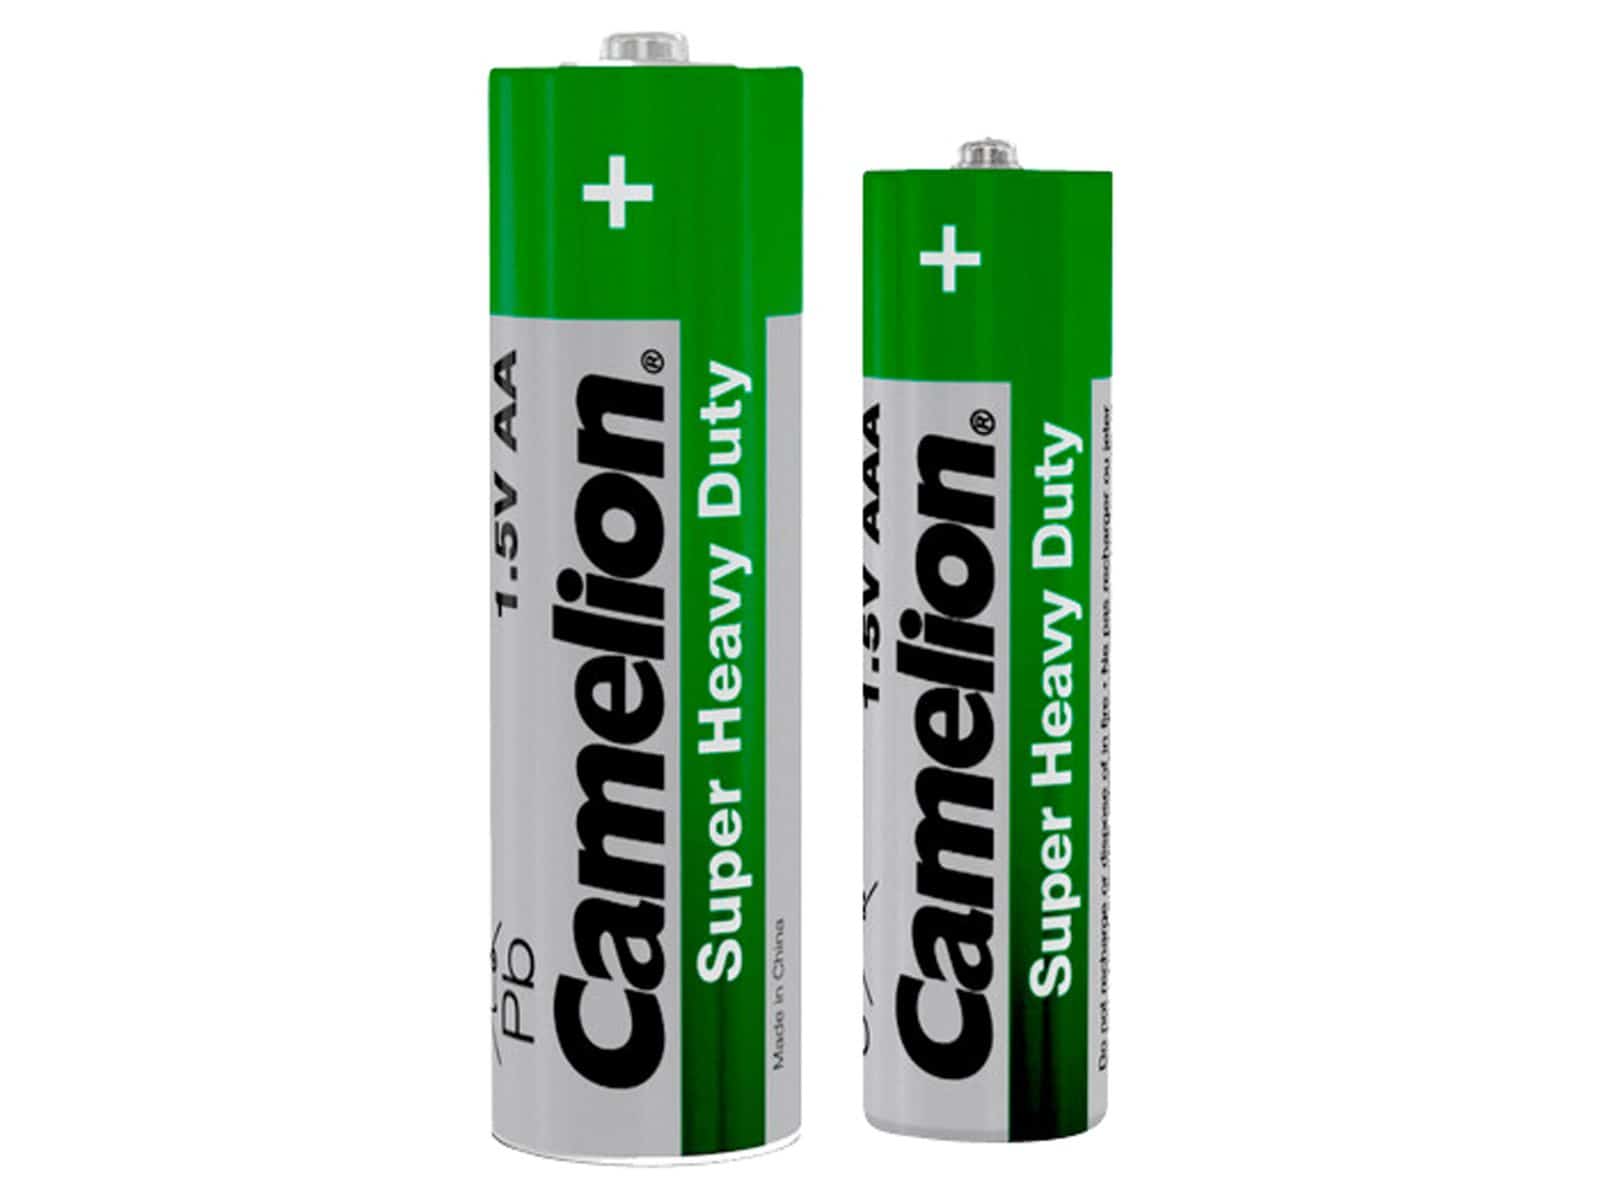 CAMELION Batterie-Set FPG-GB72, 72 St., Zink-Kohle Grün, 36x Mignon, 36x Micro von Camelion